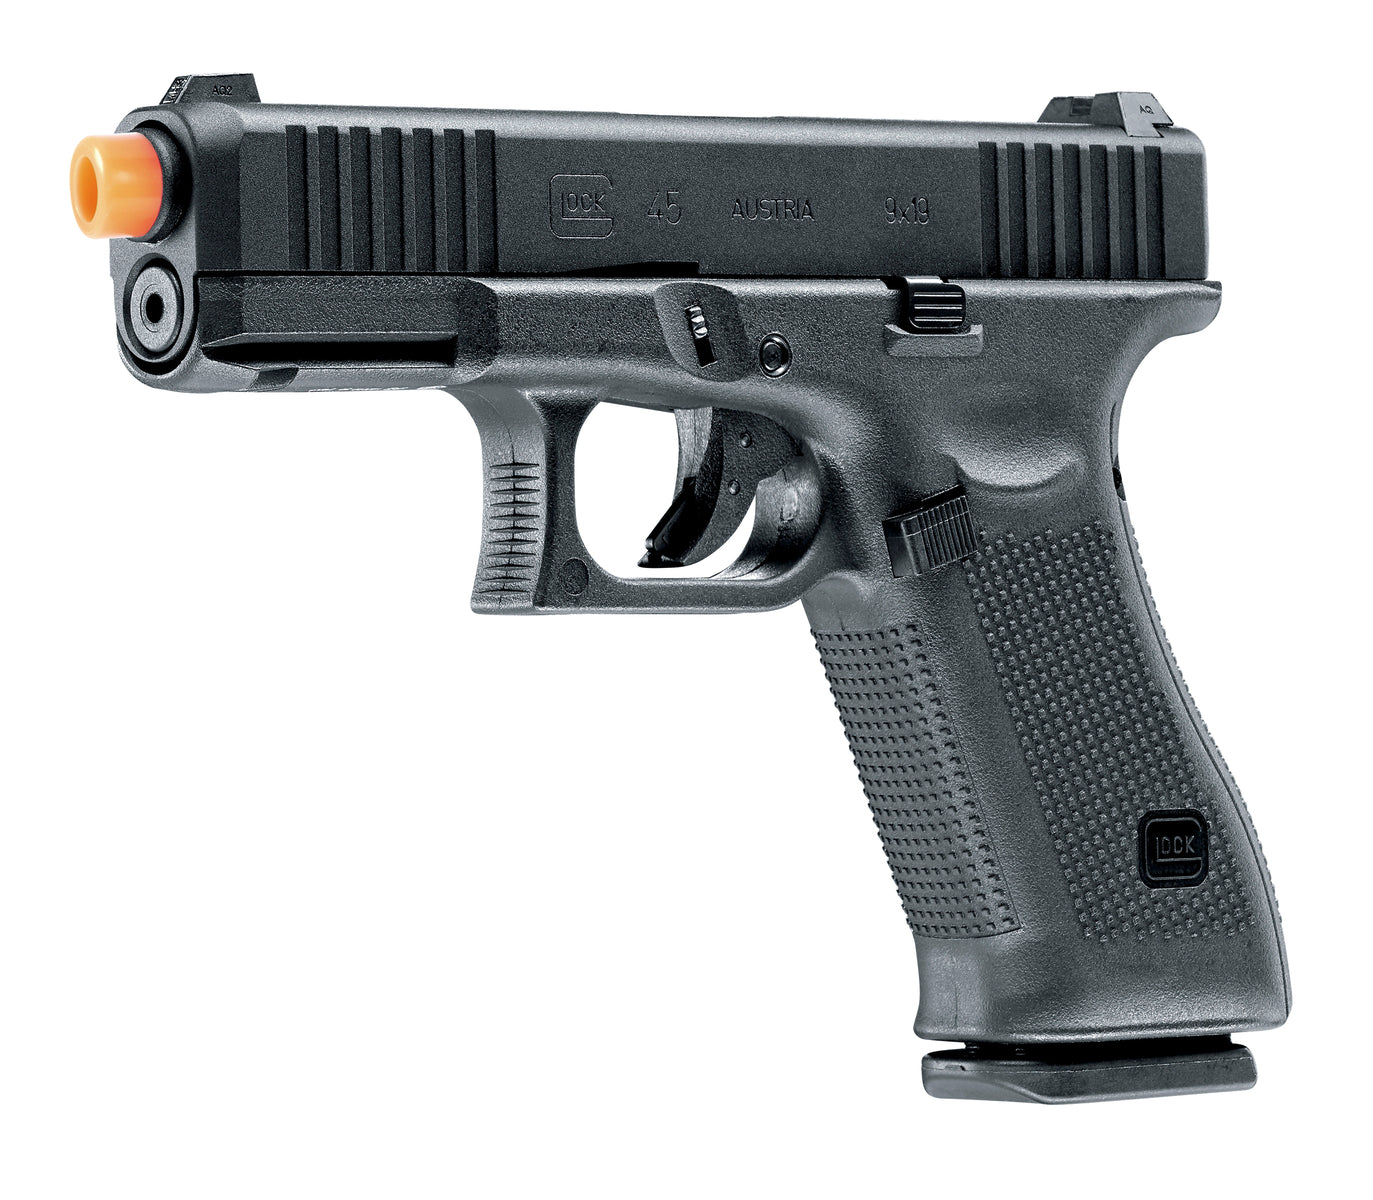 GLOCK Glock G45 GBB Airsoft Pistol - 6mm, Black, 22 Round Mag